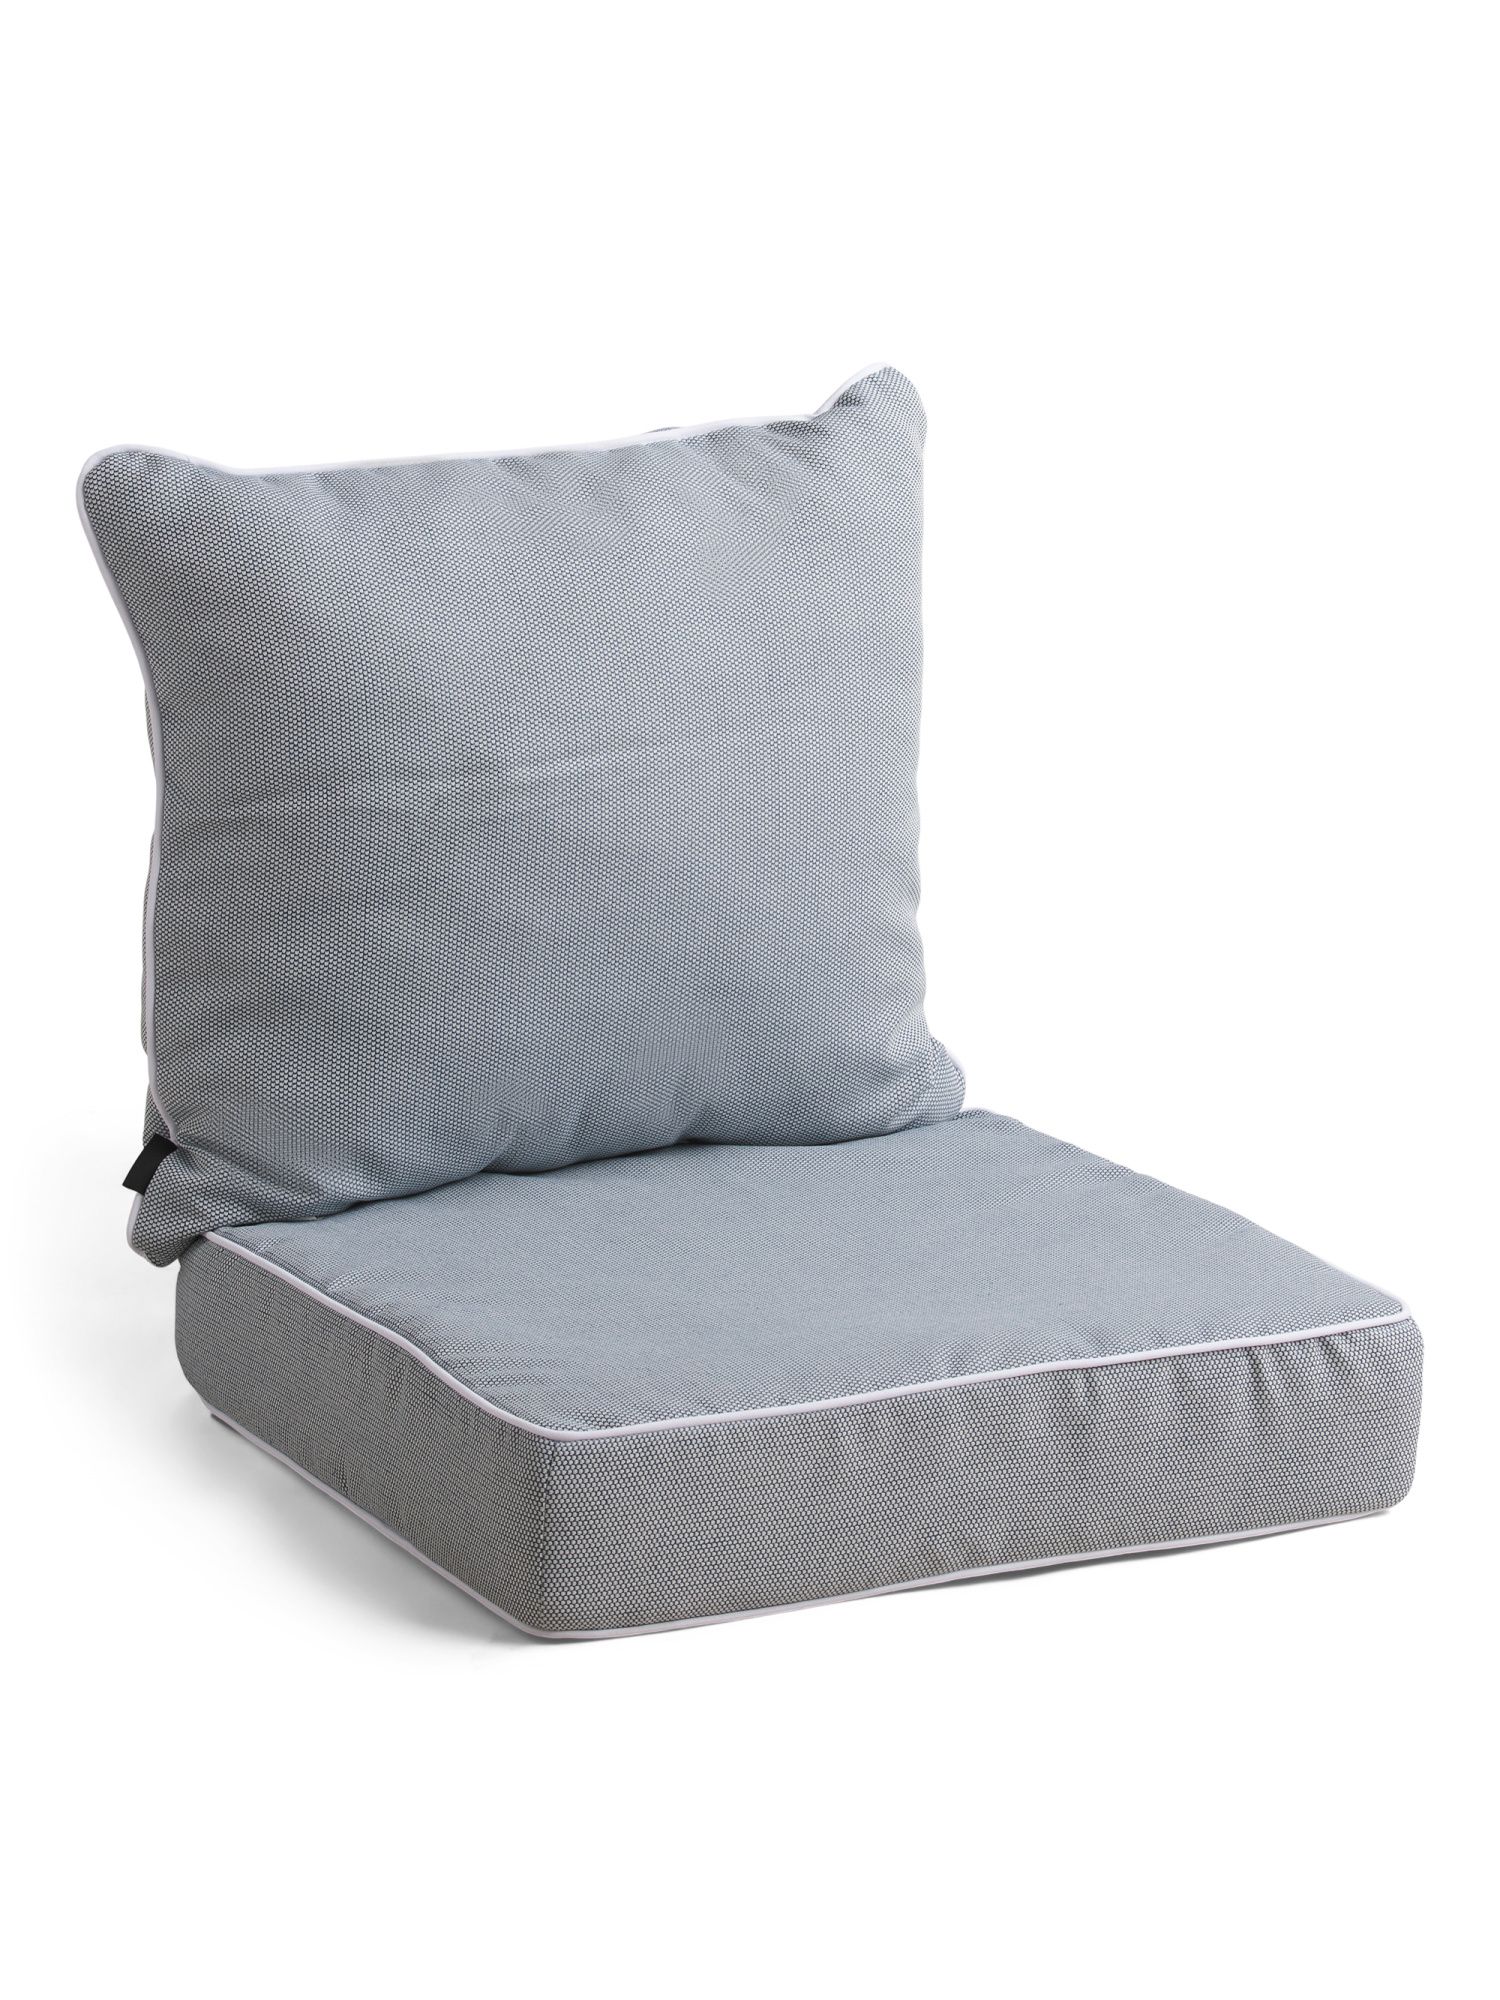 2pc Outdoor Deep Seat Cushion Set | TJ Maxx